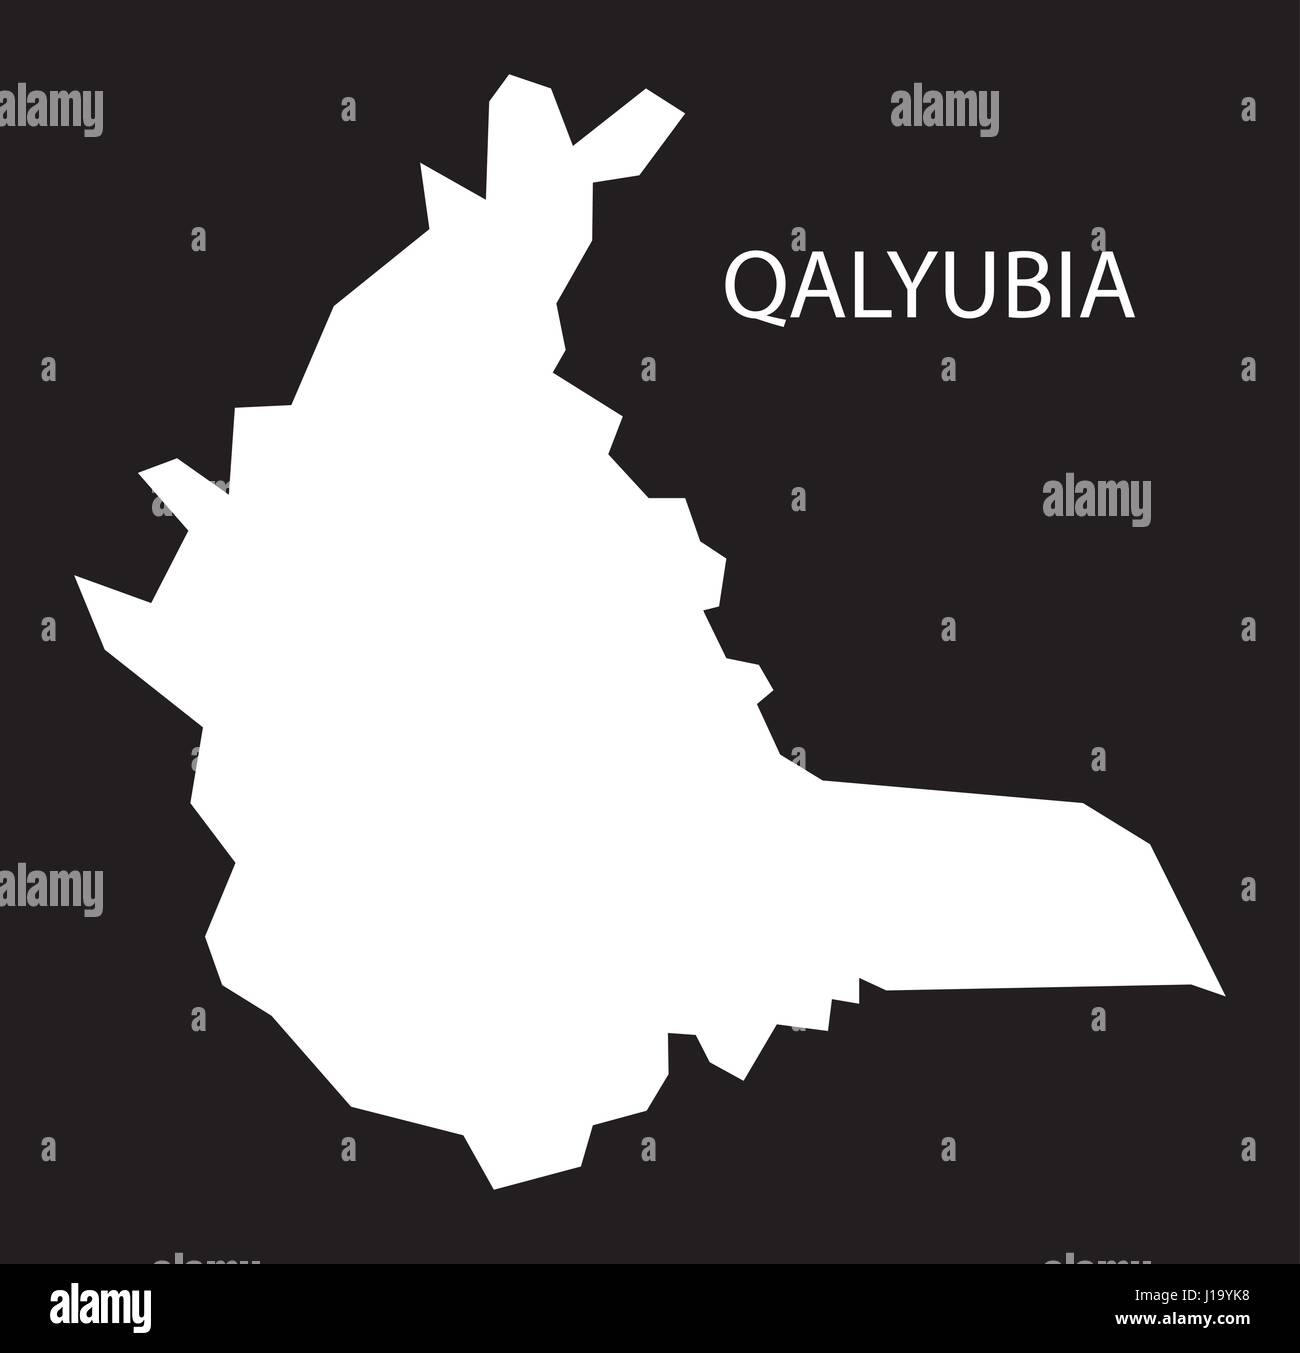 Qalyubia Ägypten Karte schwarz invertiert Silhouette Abbildung Stock Vektor